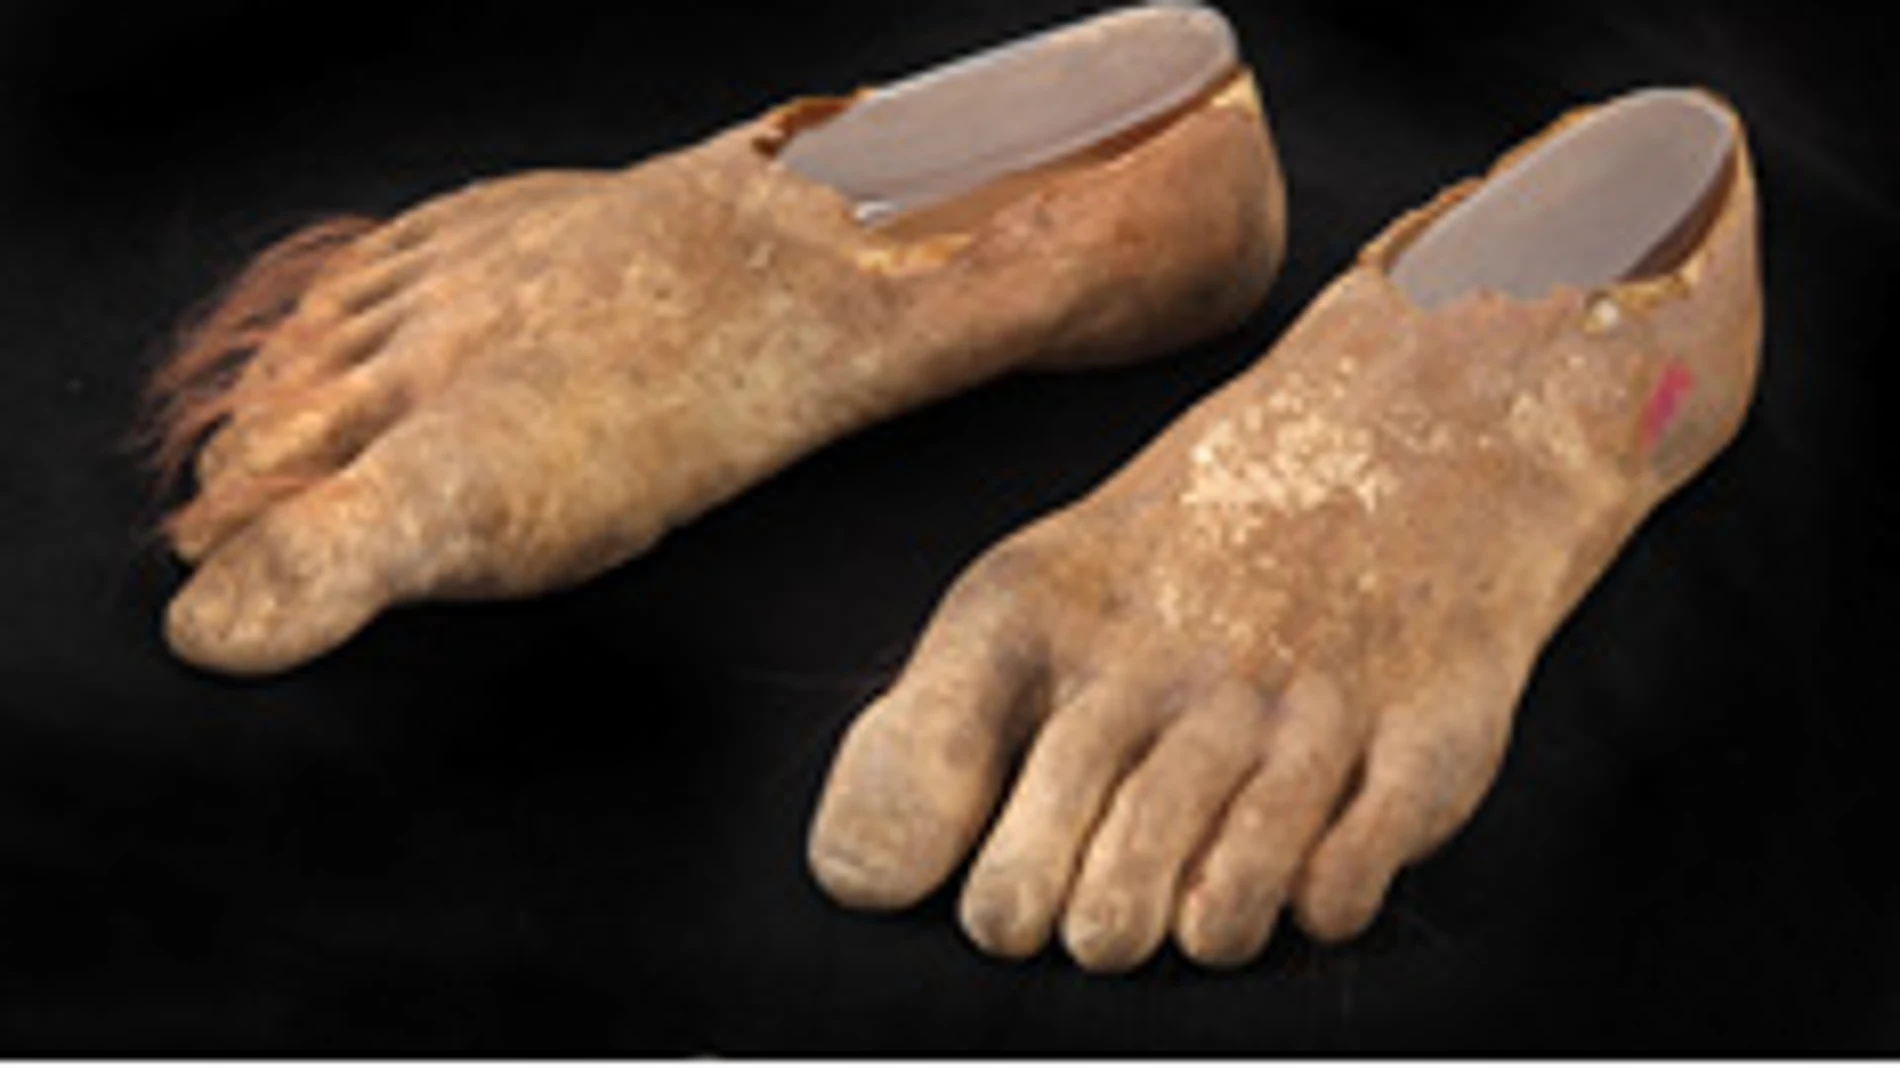 Protesis de pies de hobbit